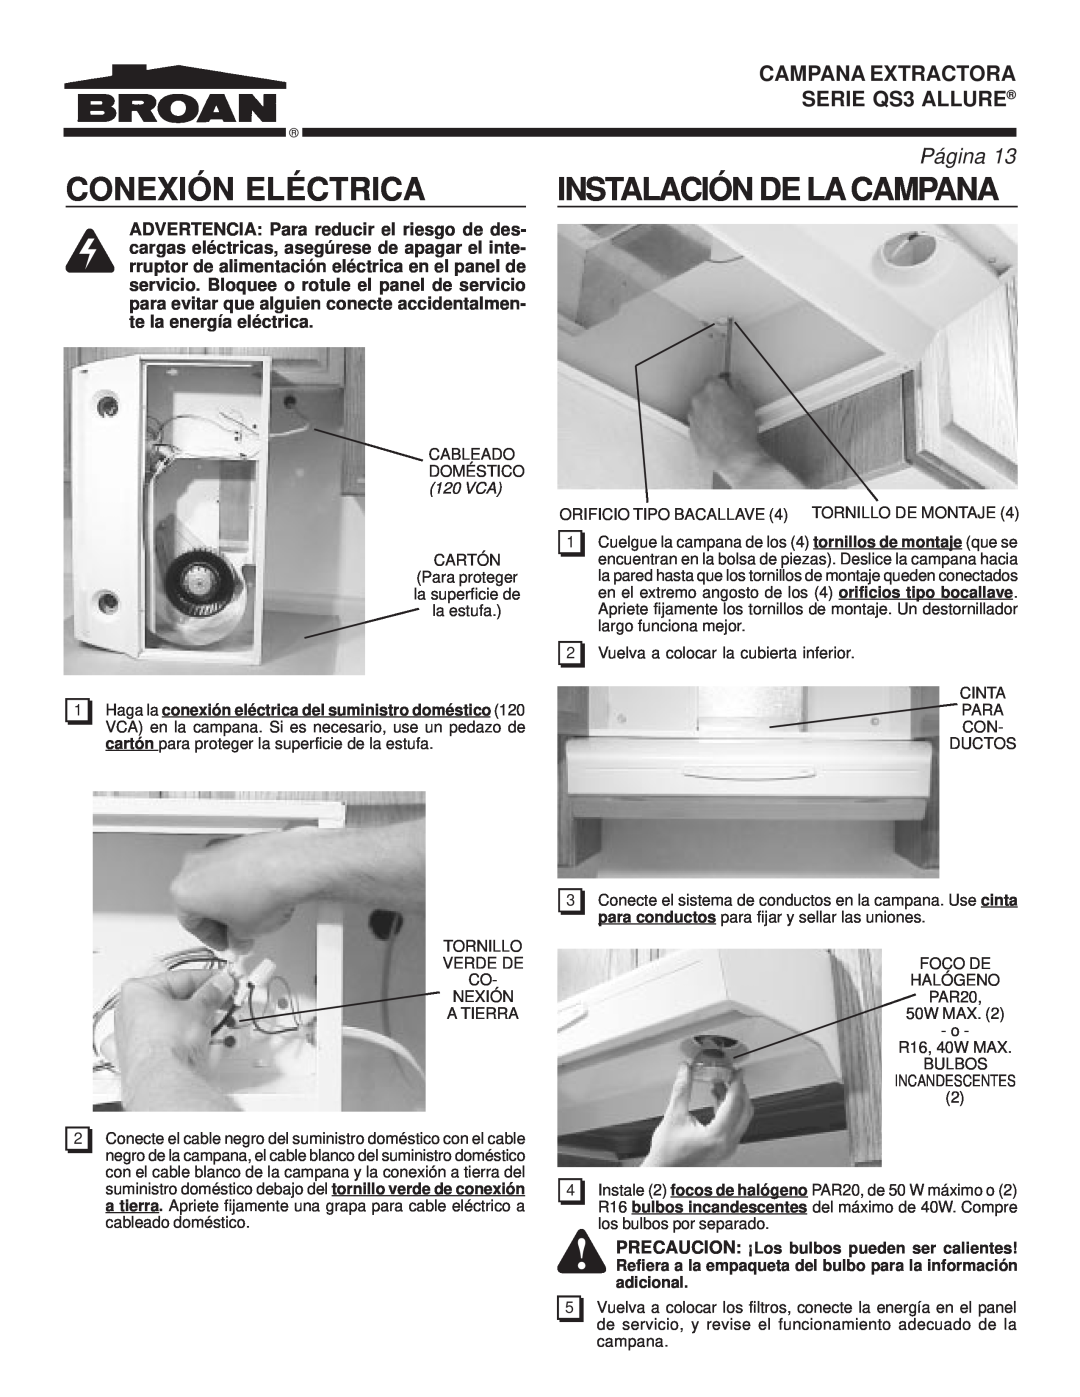 Broan warranty Conexión Eléctrica, Instalación De La Campana, SERIE QS3 ALLURE, Página, Campana Extractora 